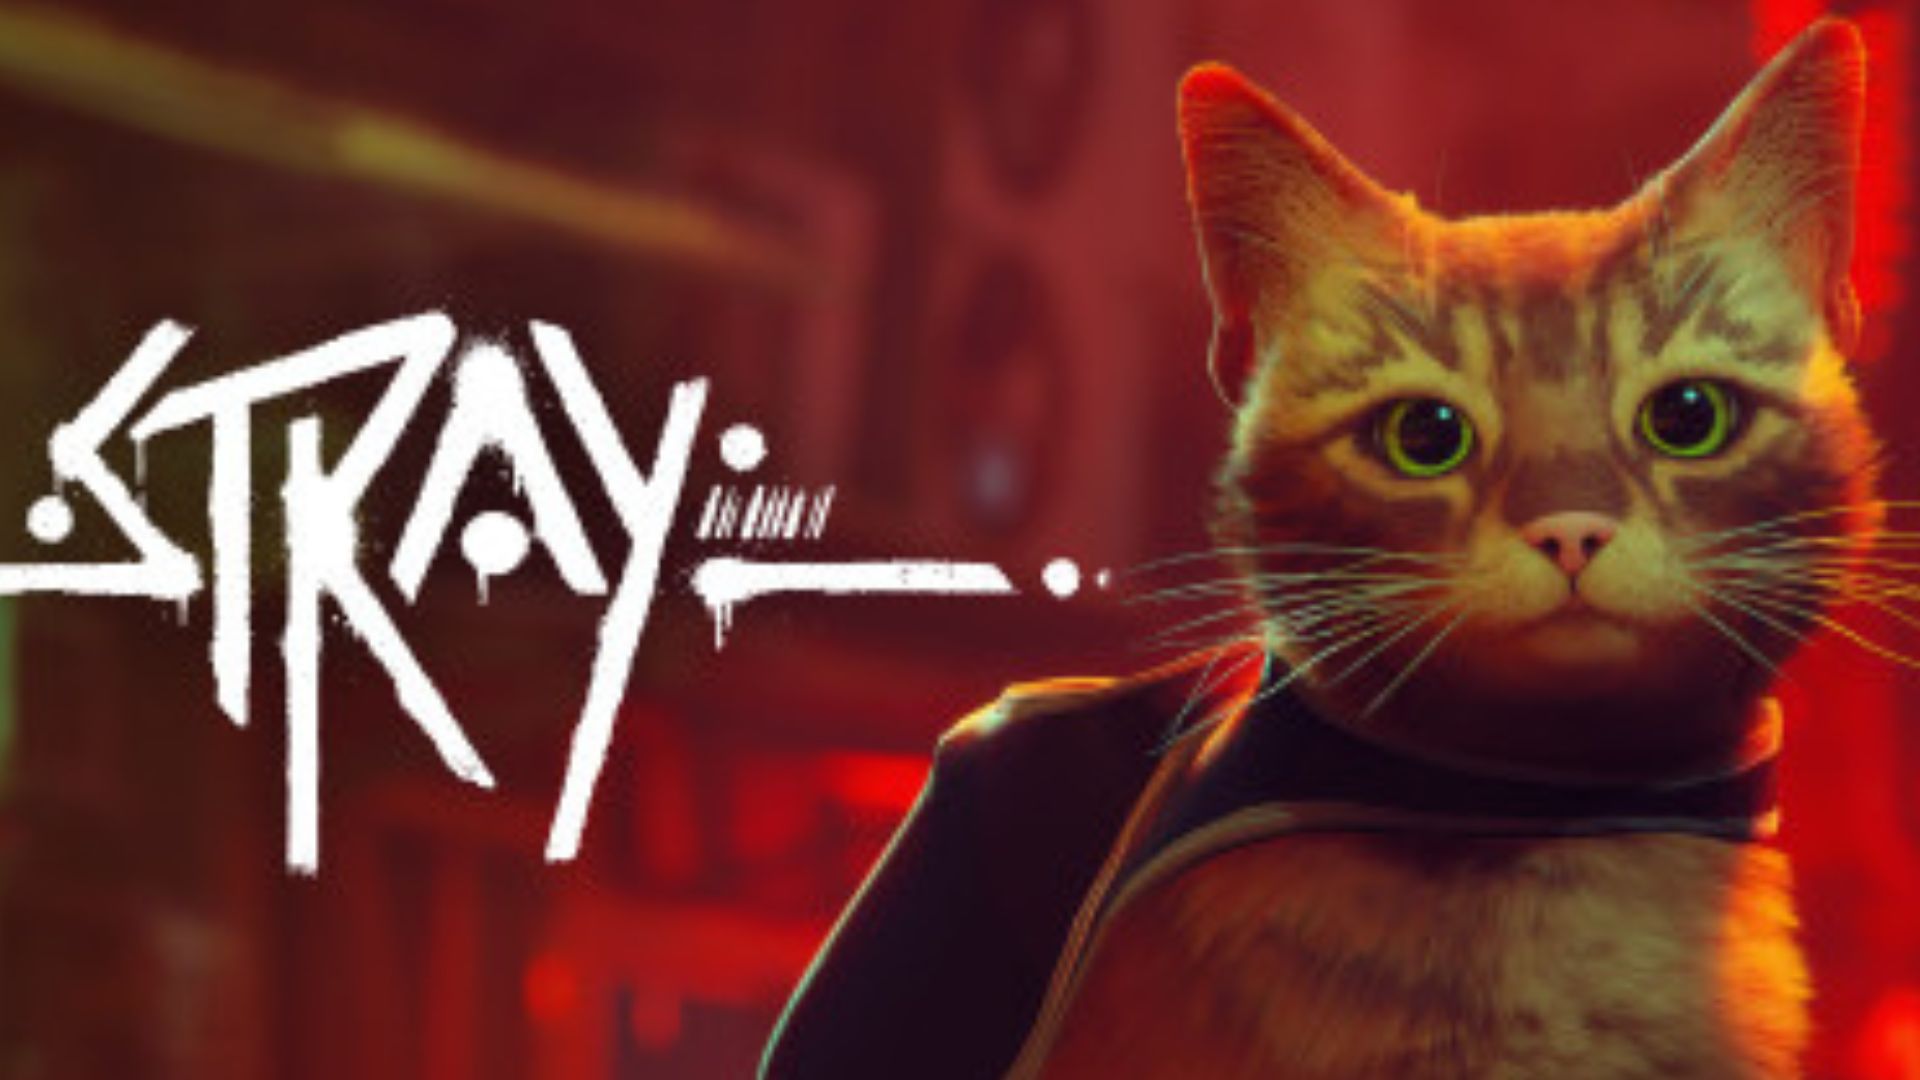 Campanha do jogo indie Stray, de gatinho, ajuda abrigos de animais